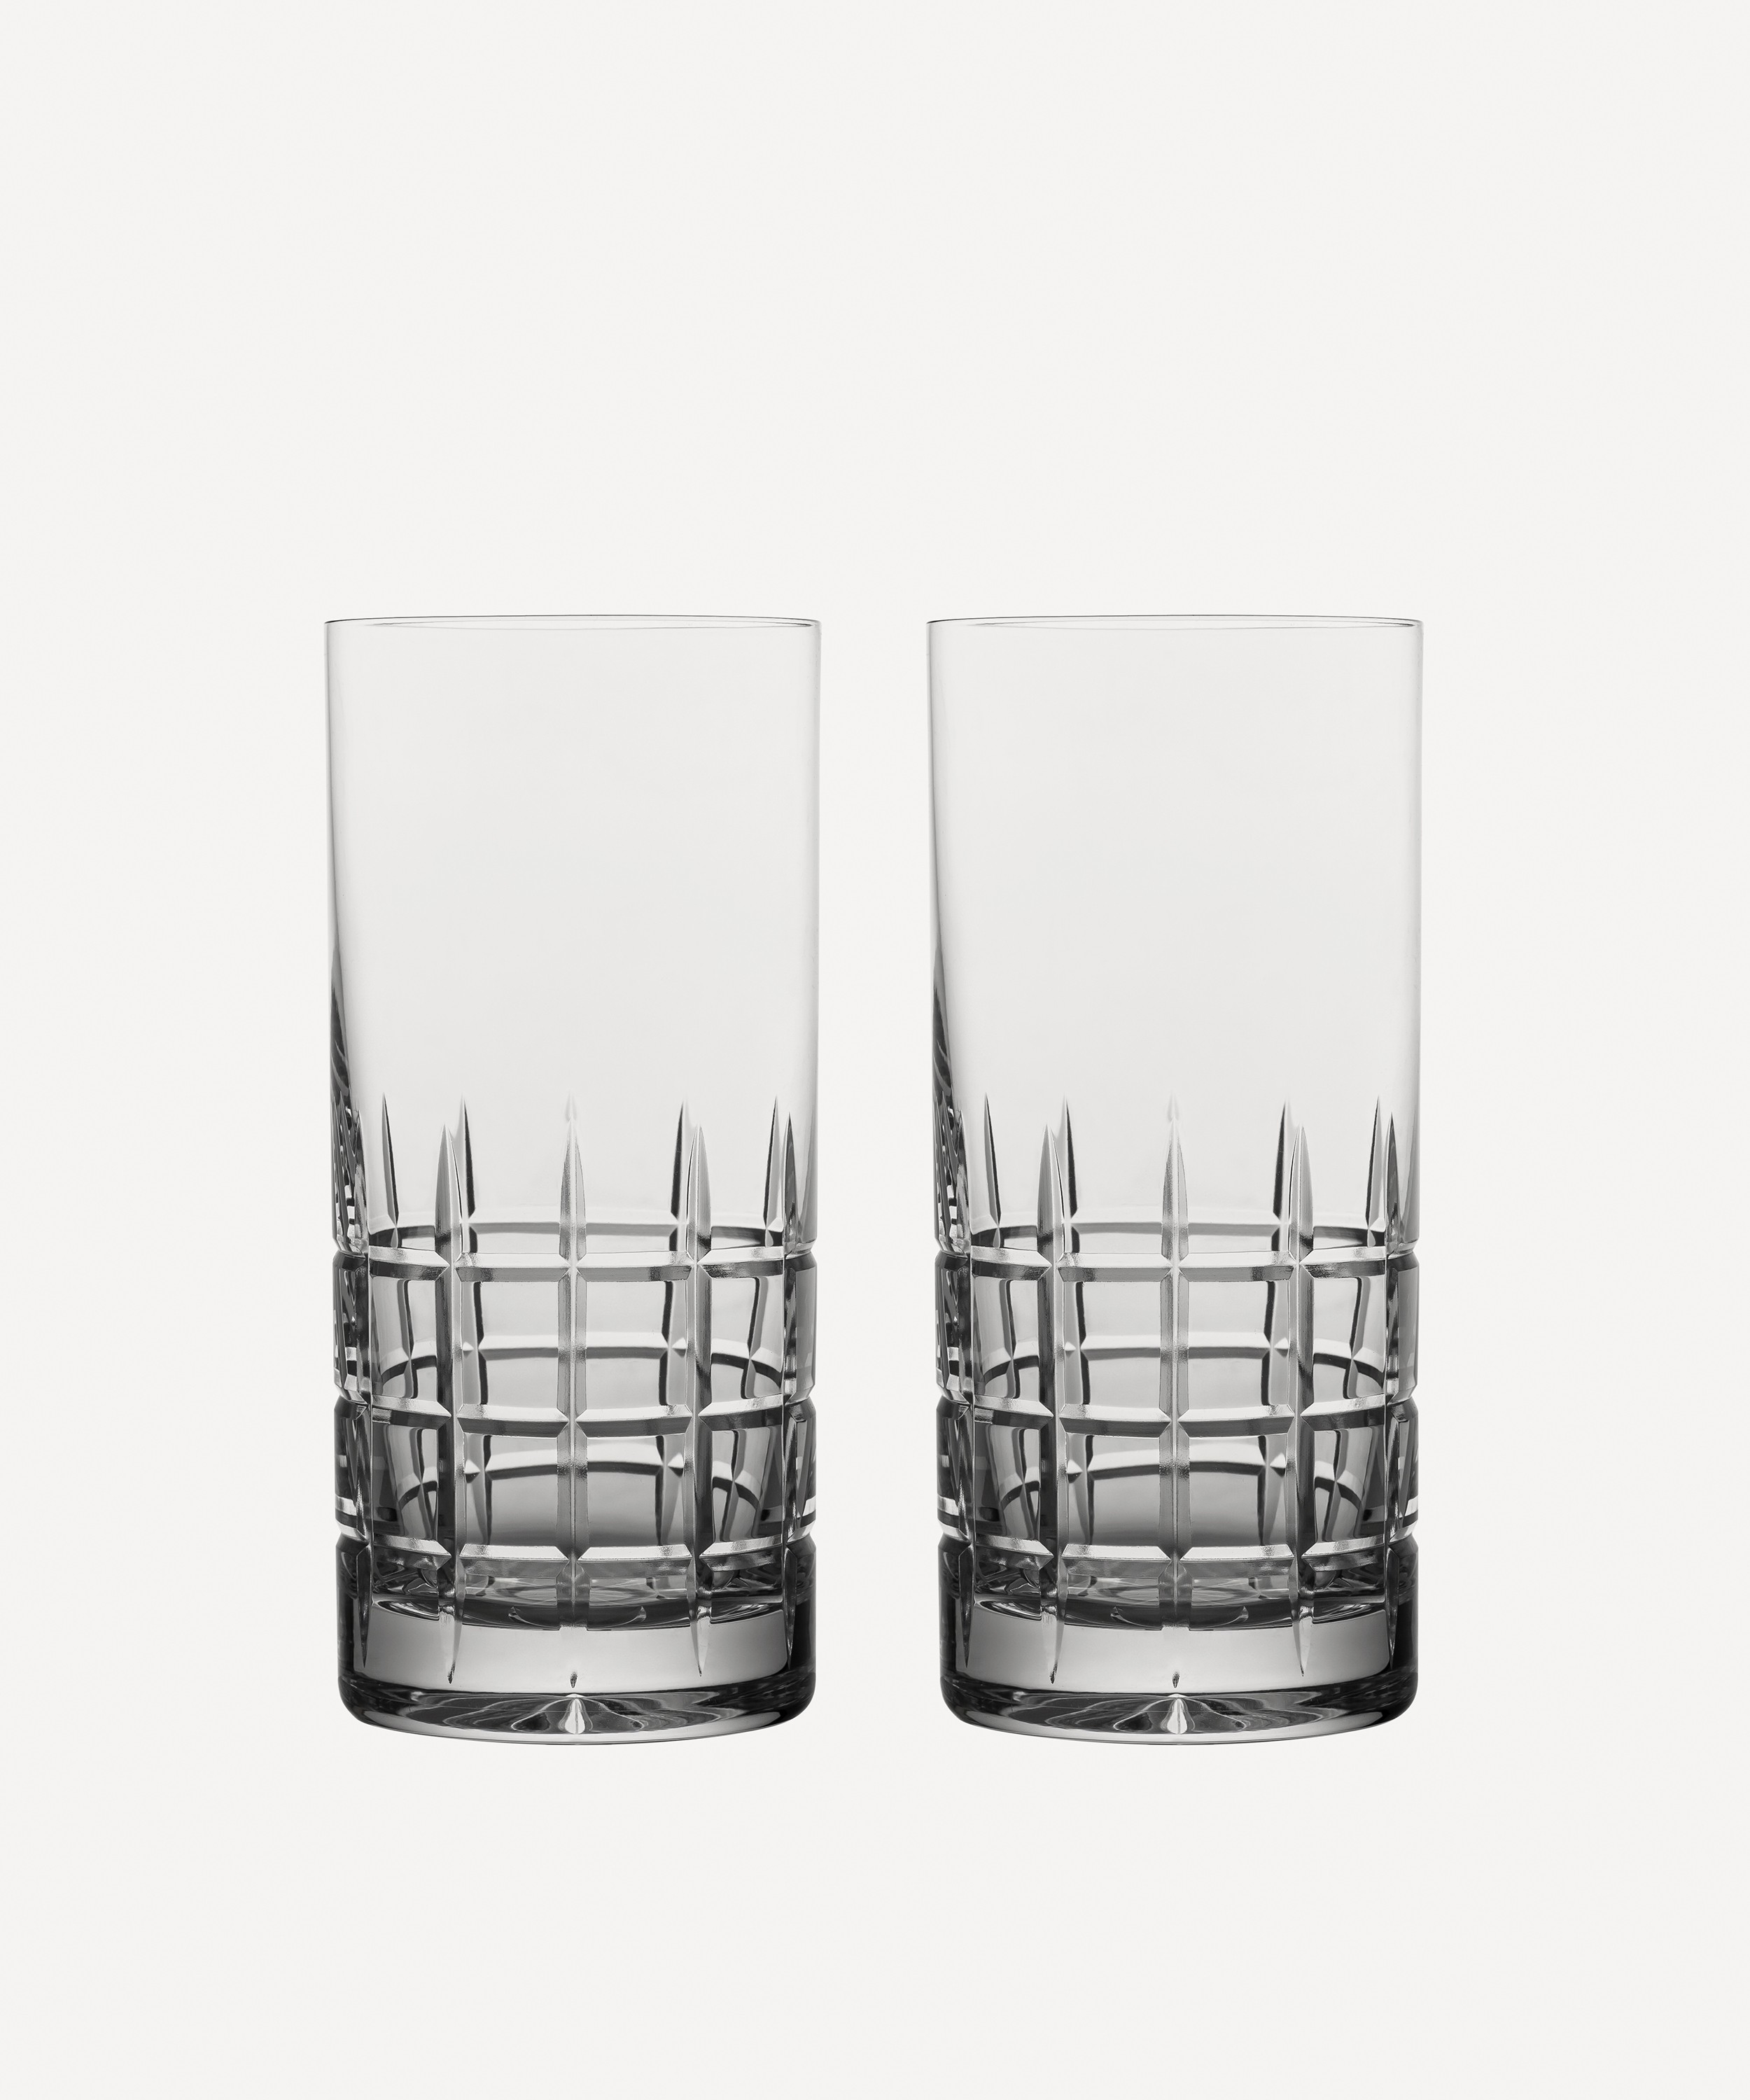 Hadeland Glassverk Kube Highball Glasses Set of 2